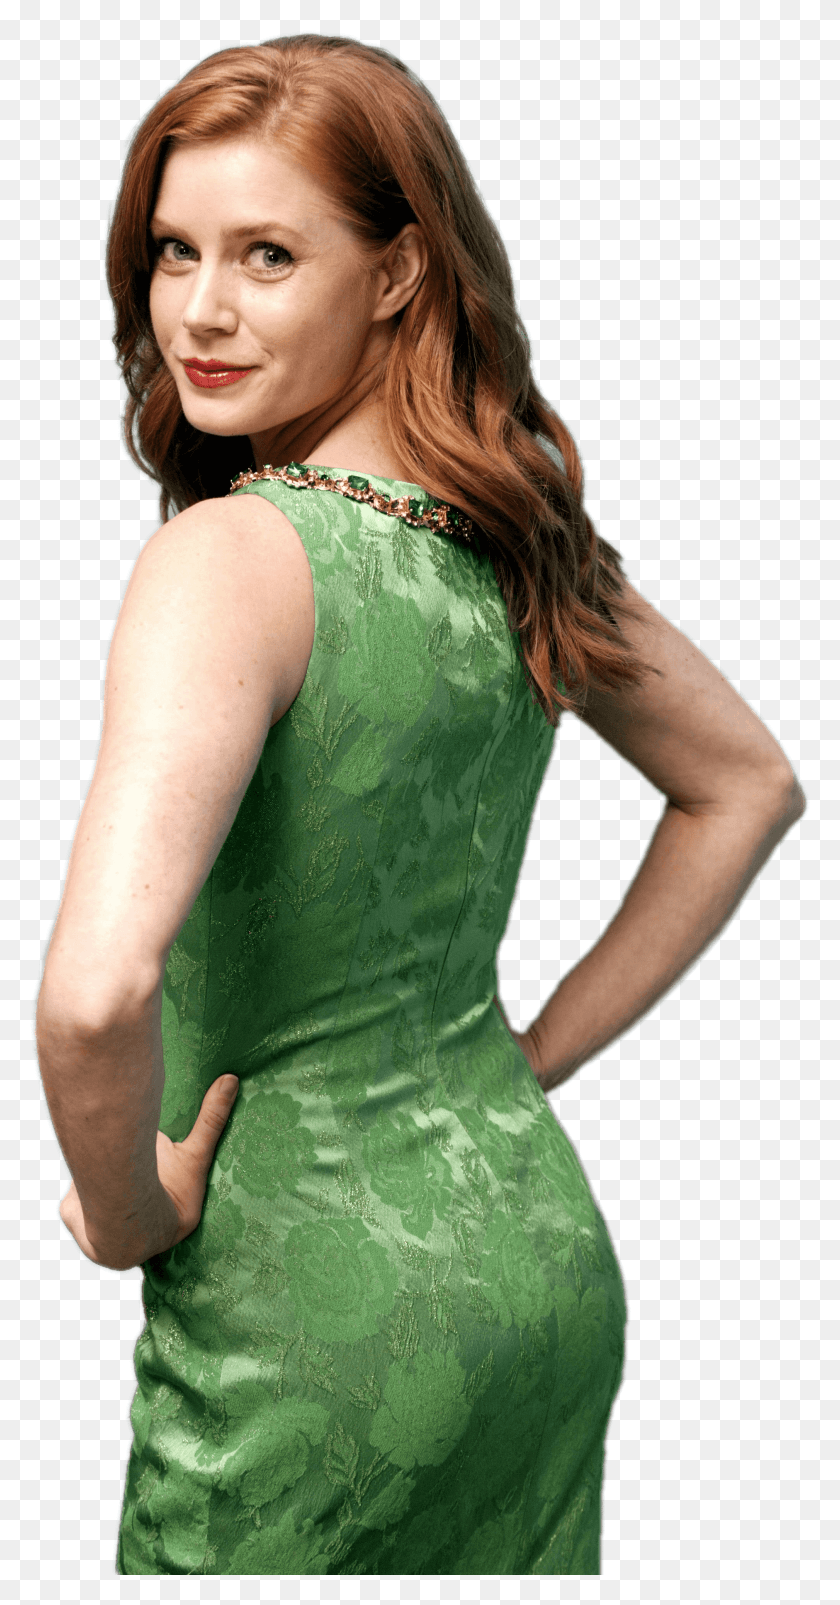 2019x4001 Amy Adams Green Dress Amy Adams Ass Butt, Clothing, Apparel, Evening Dress HD PNG Download